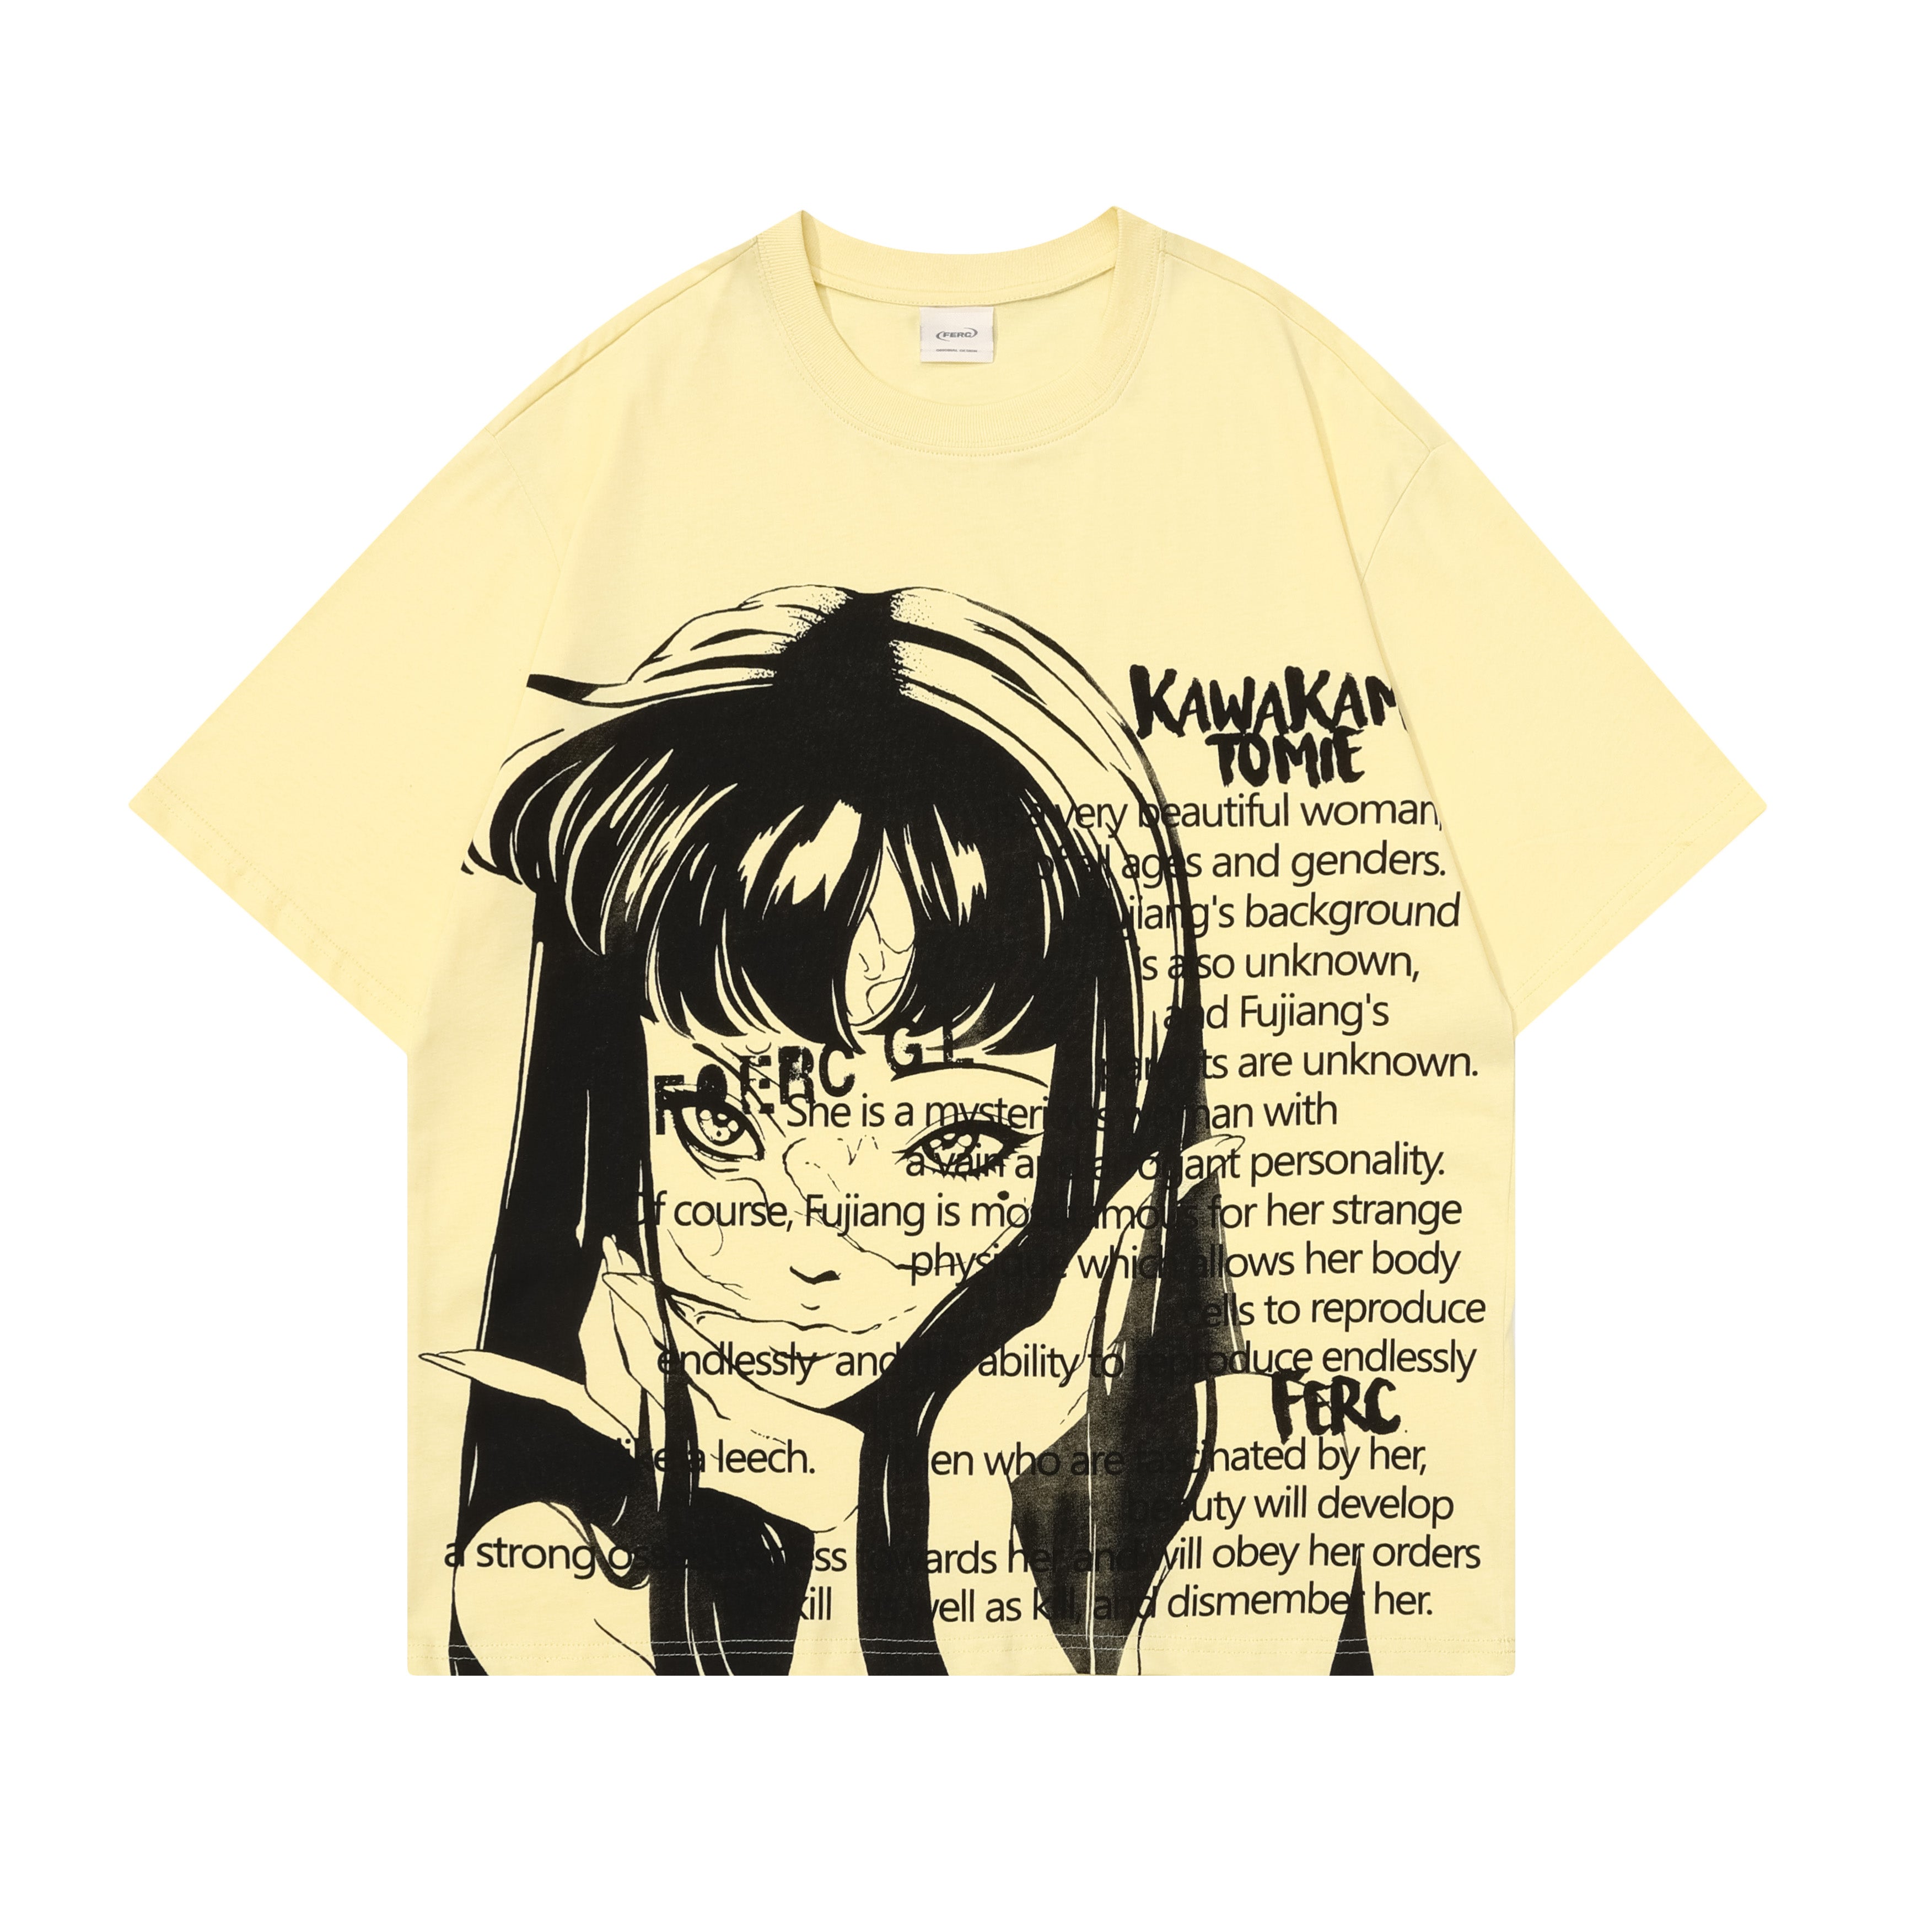 'Anime Girl' T shirt - Santo 